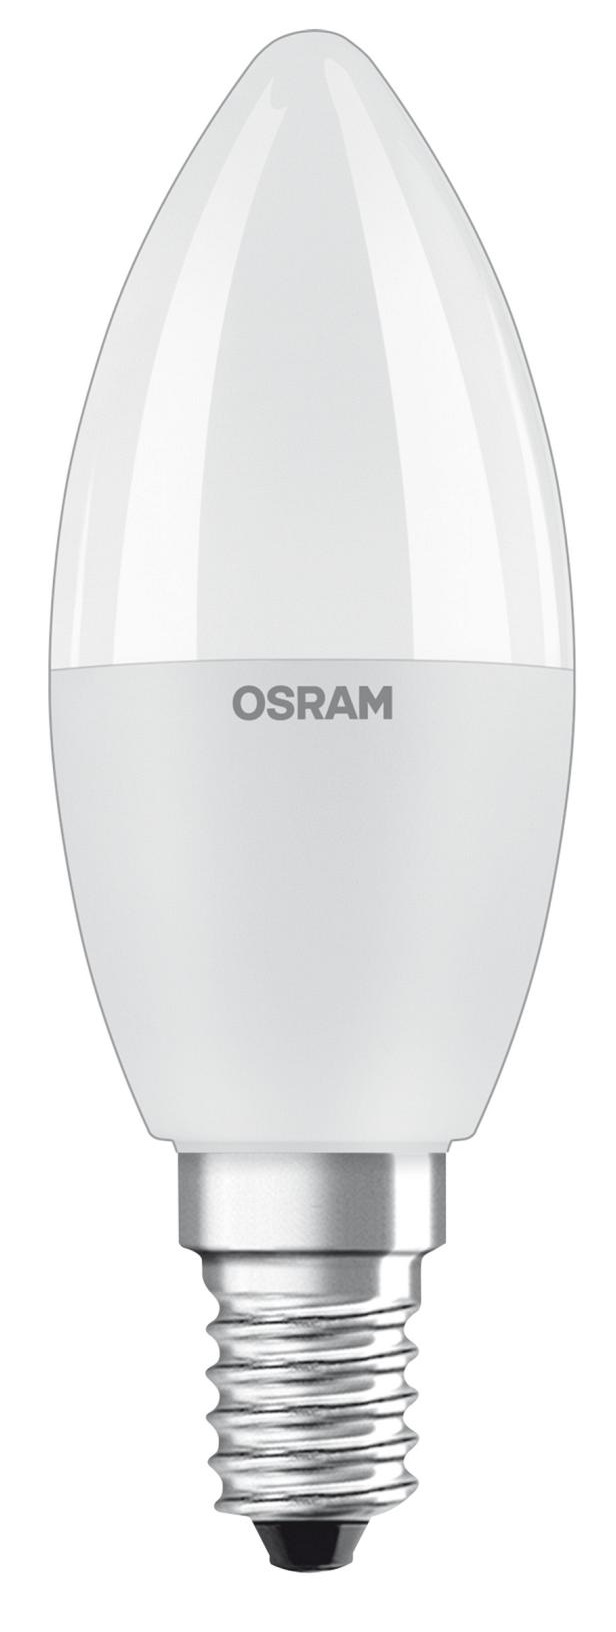 Купить светодиодная лампа osram форма свеча Osram 4058075430853 в Киеве